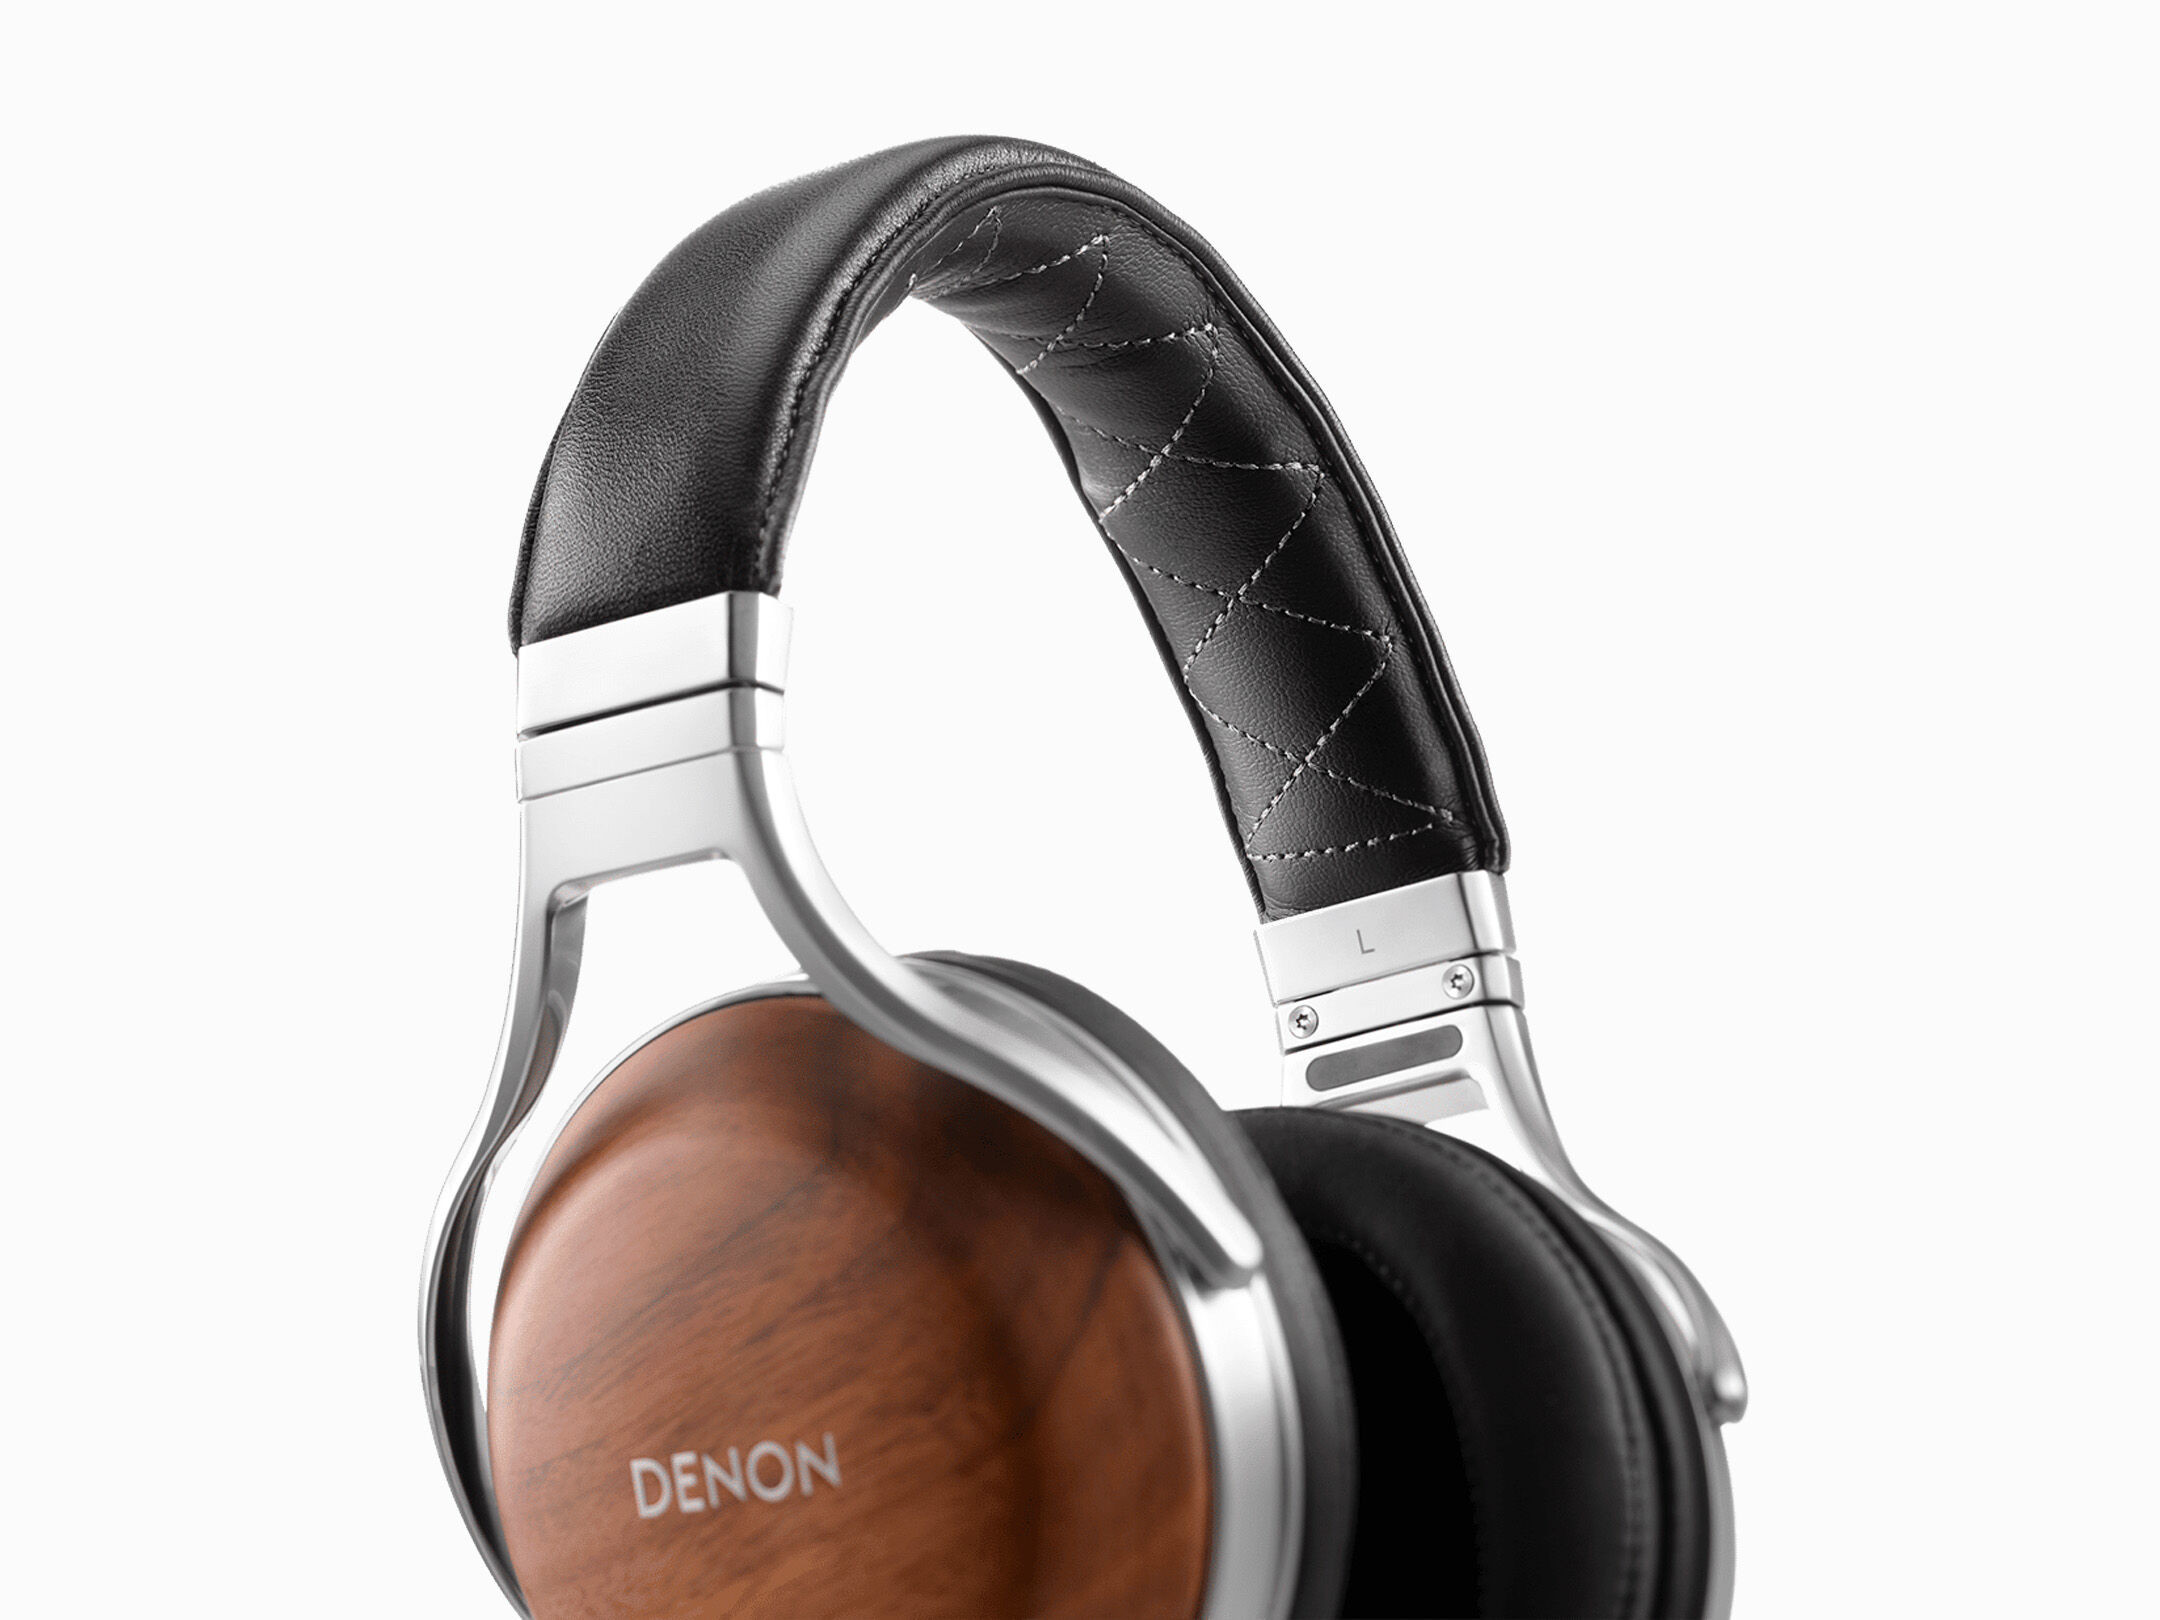 Denon-AH-D7200-Premium-Over-Ear-Kopfhorer-aus-Walnussholz